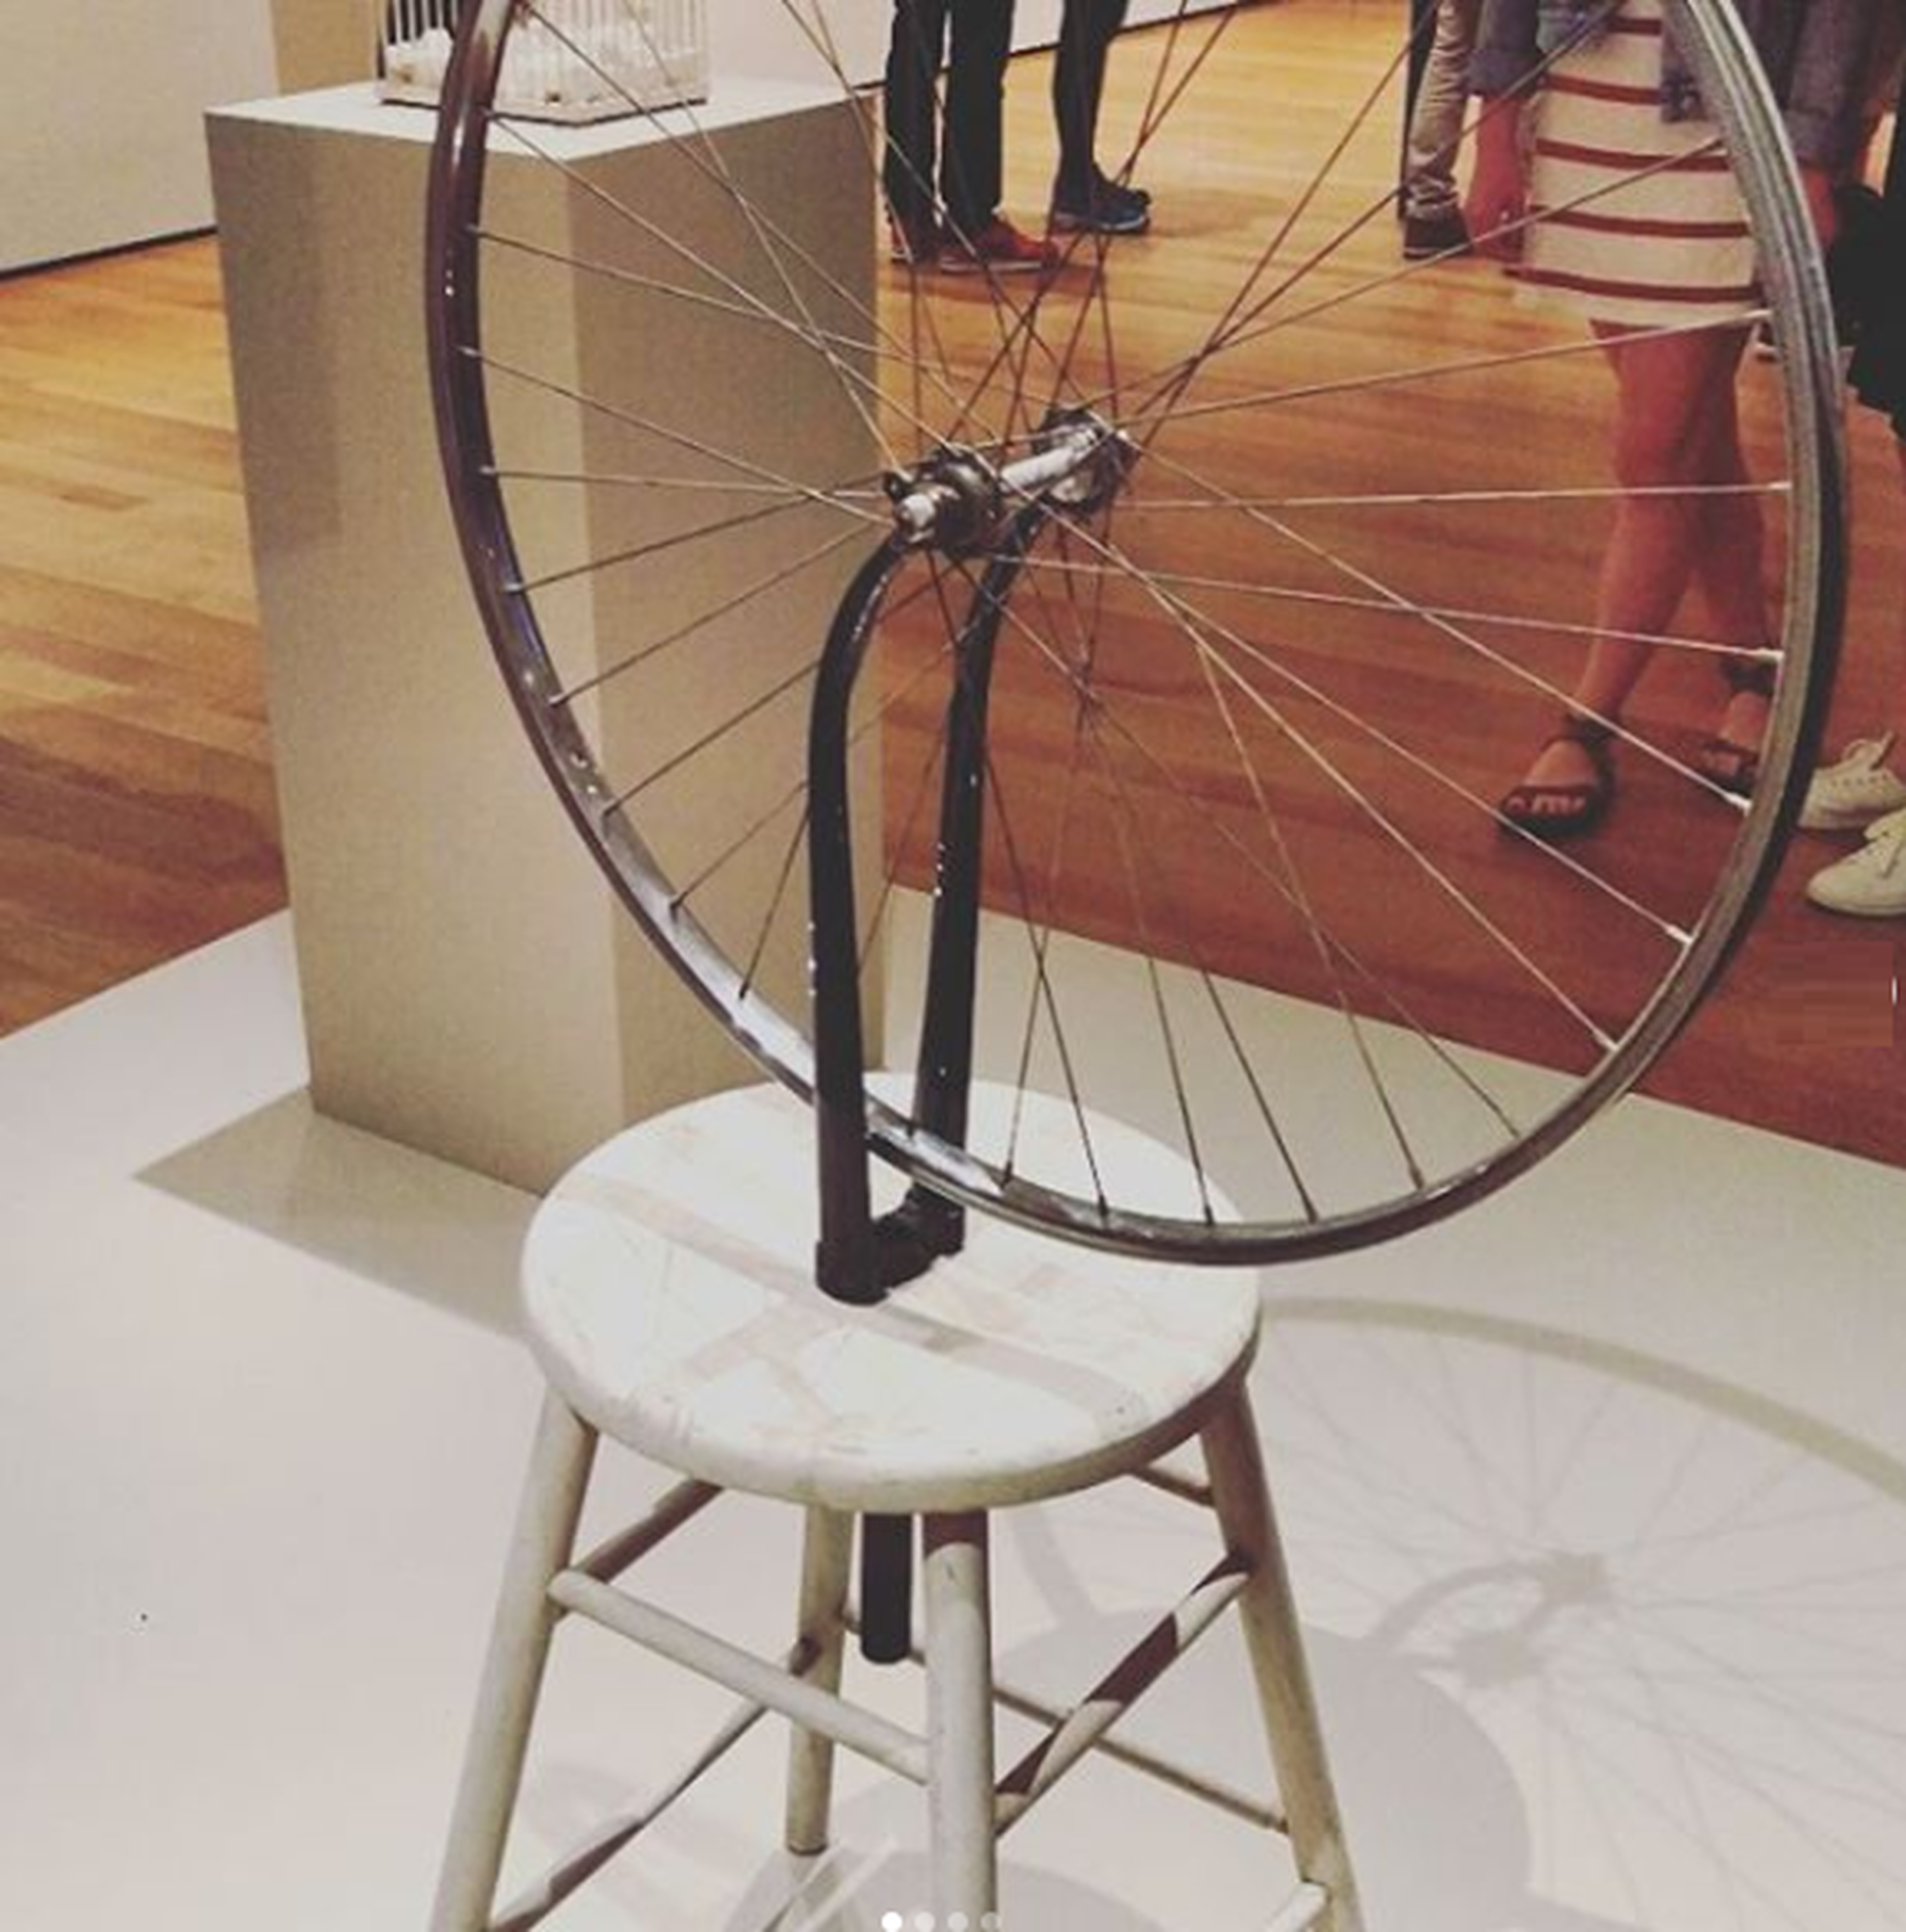 Rueda de bicicleta sobre taburete - Marcel Duchamp